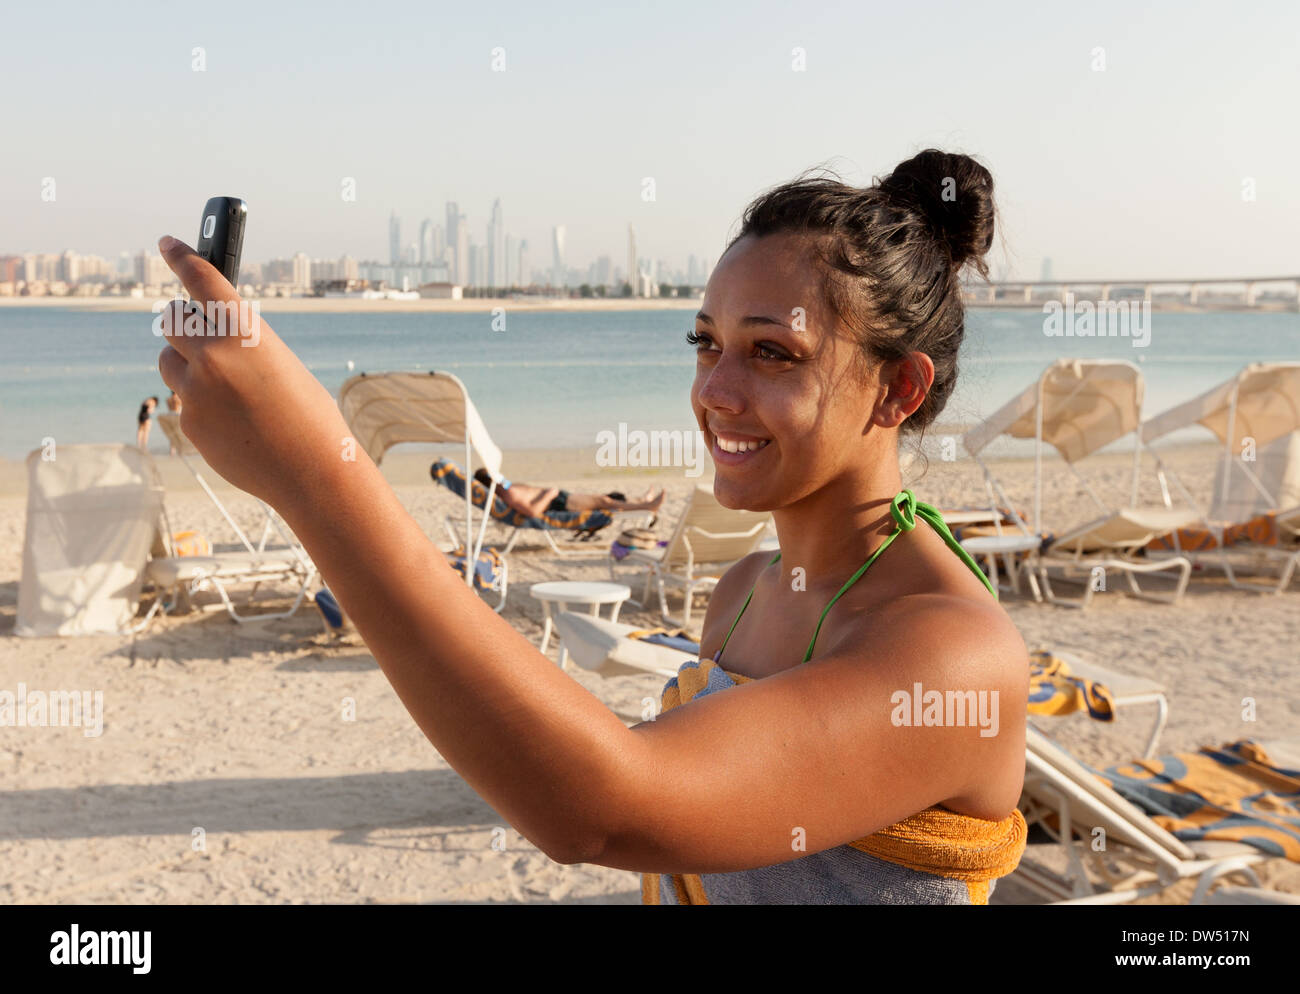 Woman taking a photo selfies sur la plage en vacances, l'Hôtel Atlantis beach, Dubai Emirats Arabes Unis ÉMIRATS ARABES UNIS, Moyen Orient Banque D'Images